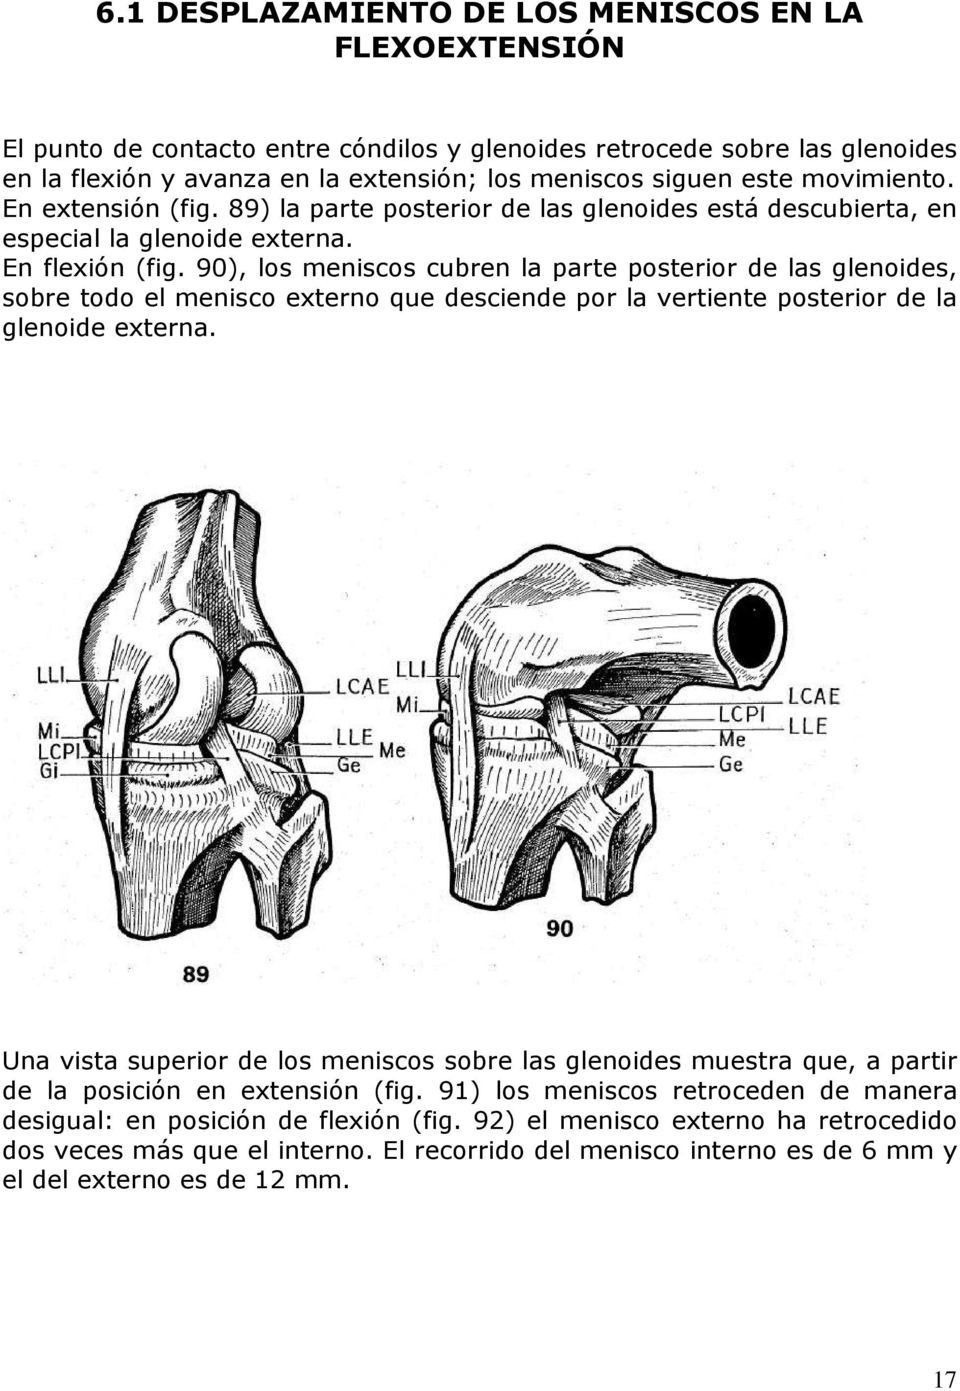 90), los meniscos cubren la parte posterior de las glenoides, sobre todo el menisco externo que desciende por la vertiente posterior de la glenoide externa.